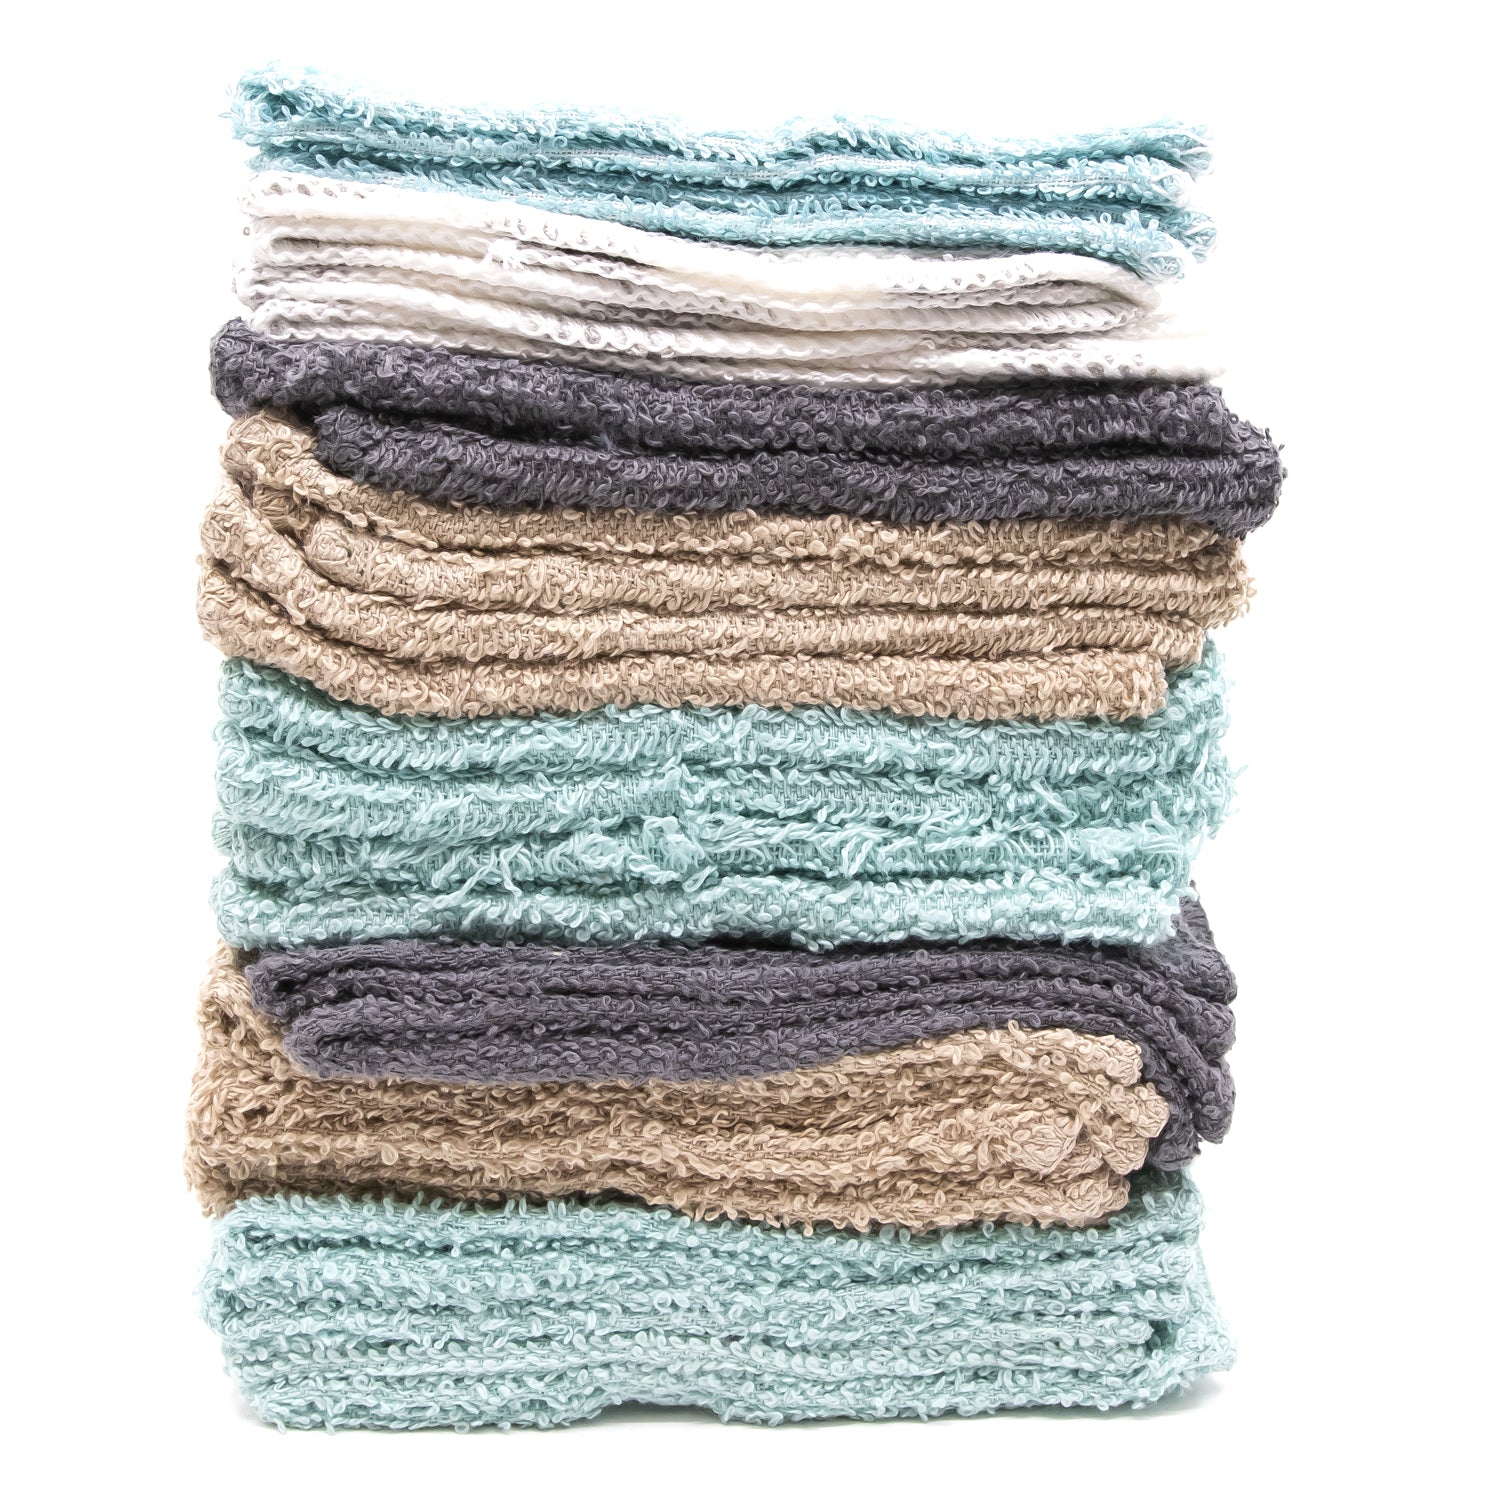 100% Cotton Assorted Color Wash Cloths